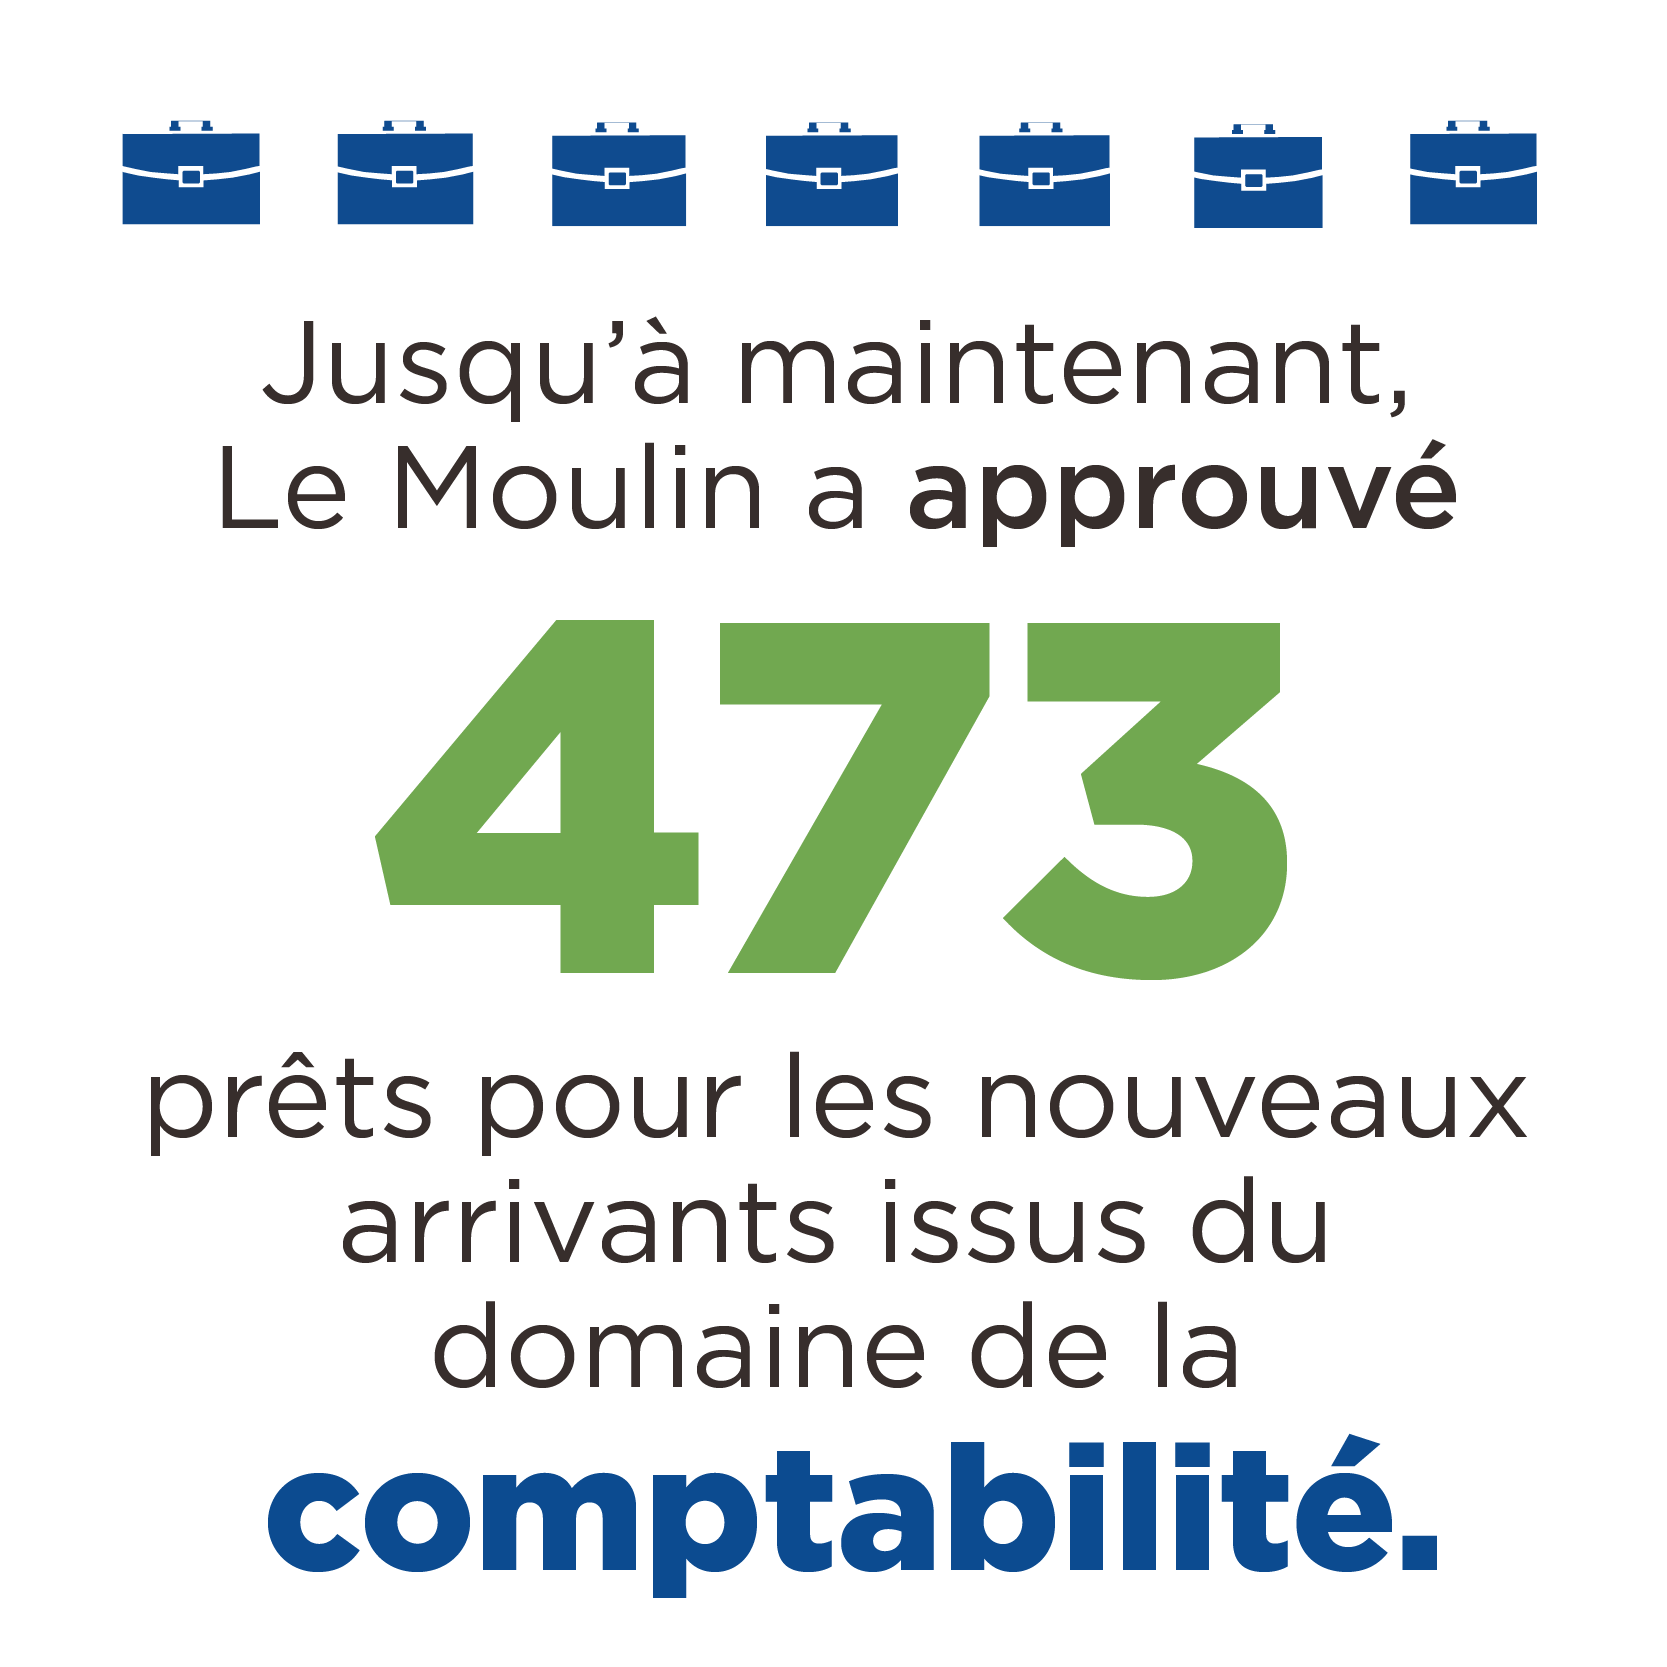 Jusqu'à maintenant Le Moulin a approuvé 473 prêts pour les nouveaux arrivants issus du domaine de la comptabilité.